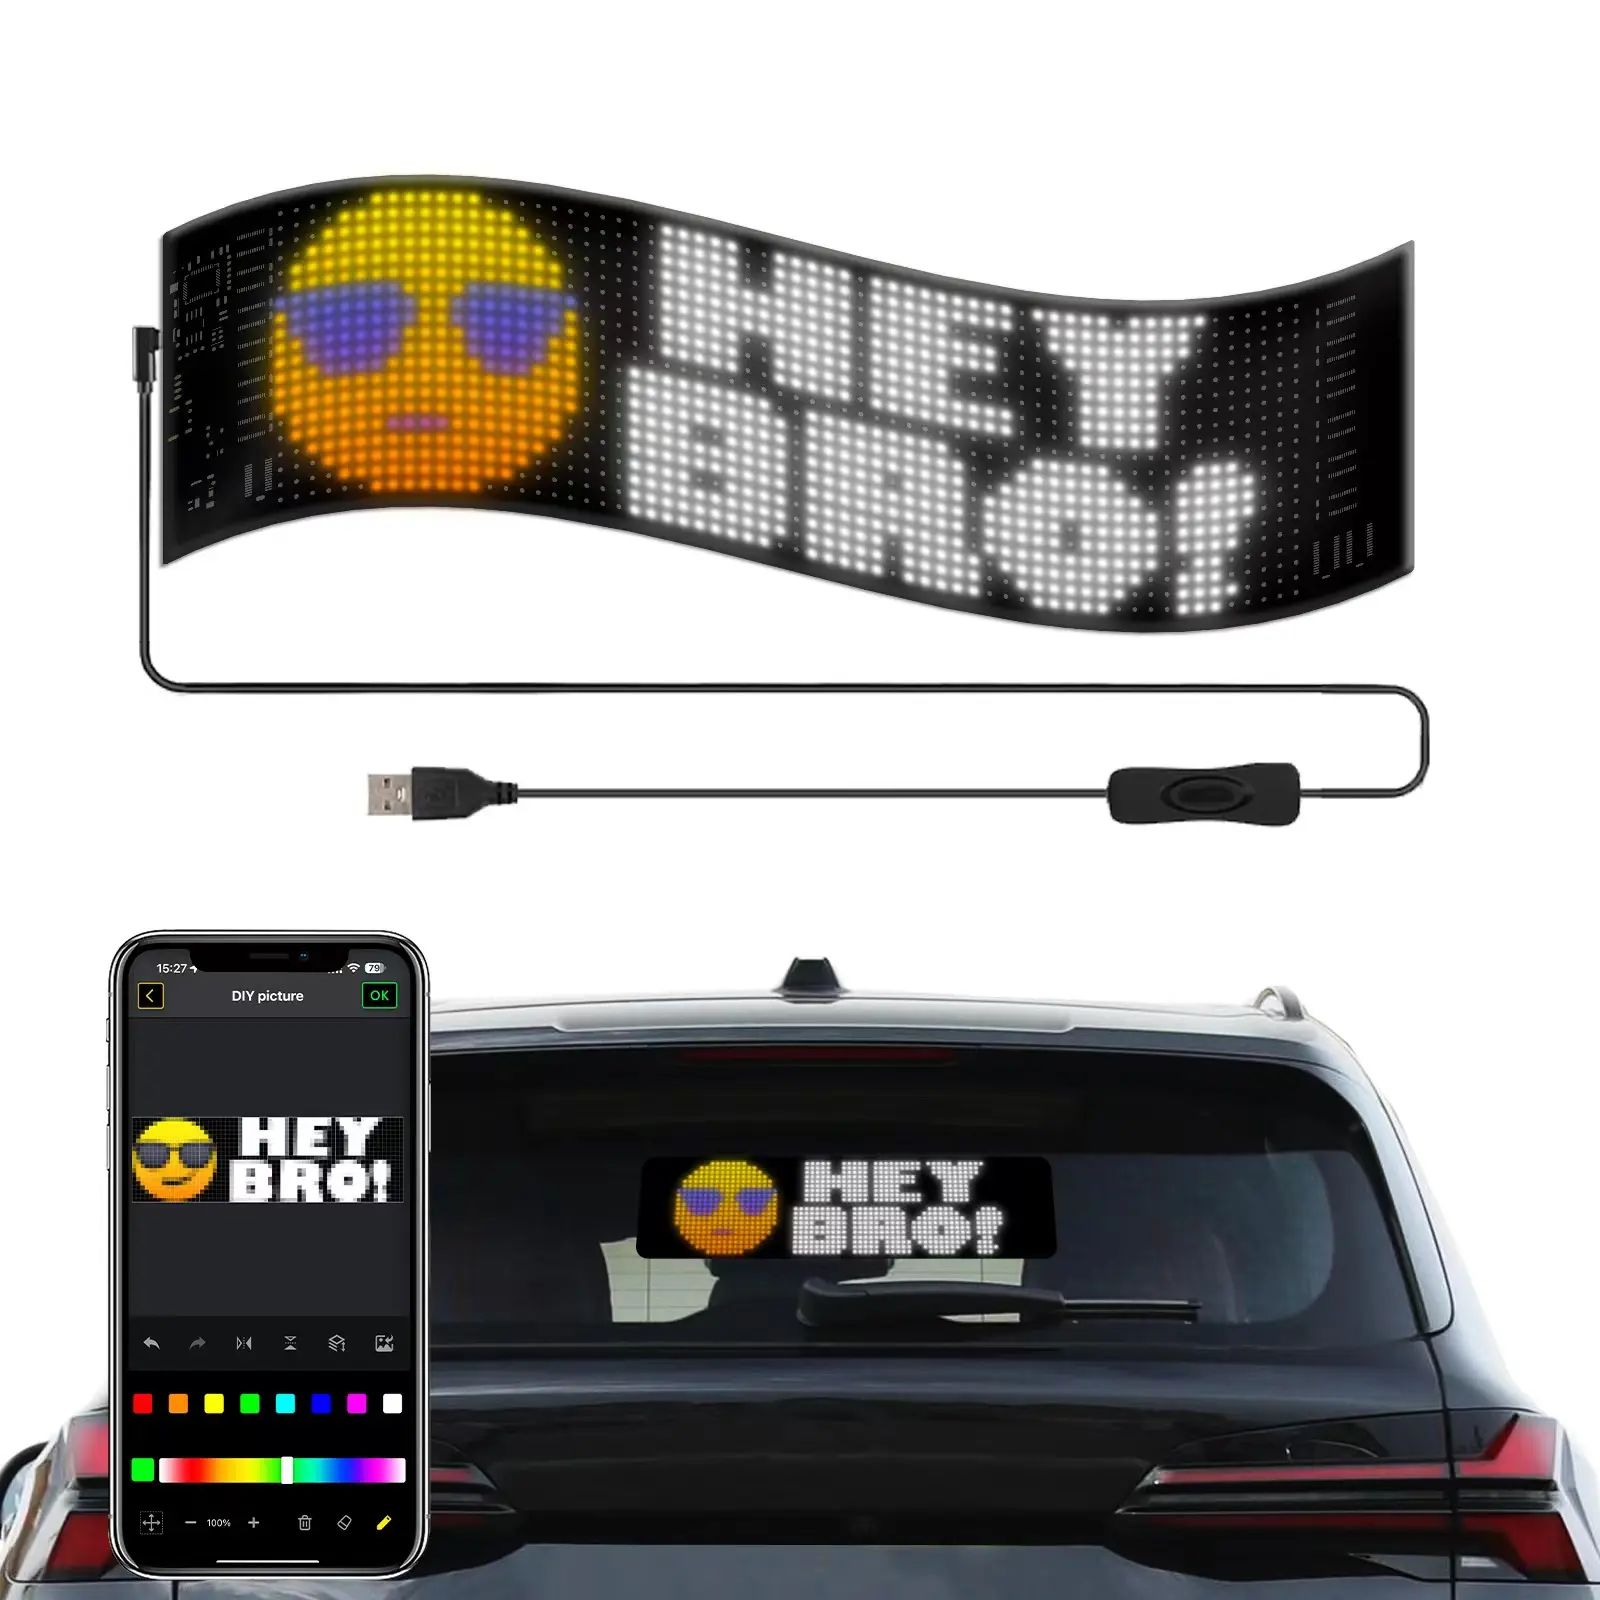 لوحة إعلانات مرنة بإضاءة ليد بتصميم جديد عبر تطبيق التحكم في النافذة الخلفية للسيارة وشاشة عرض بإضاءة ليد ناعمة رفيعة للغاية تتميز بتدحرج ملون بالكامل